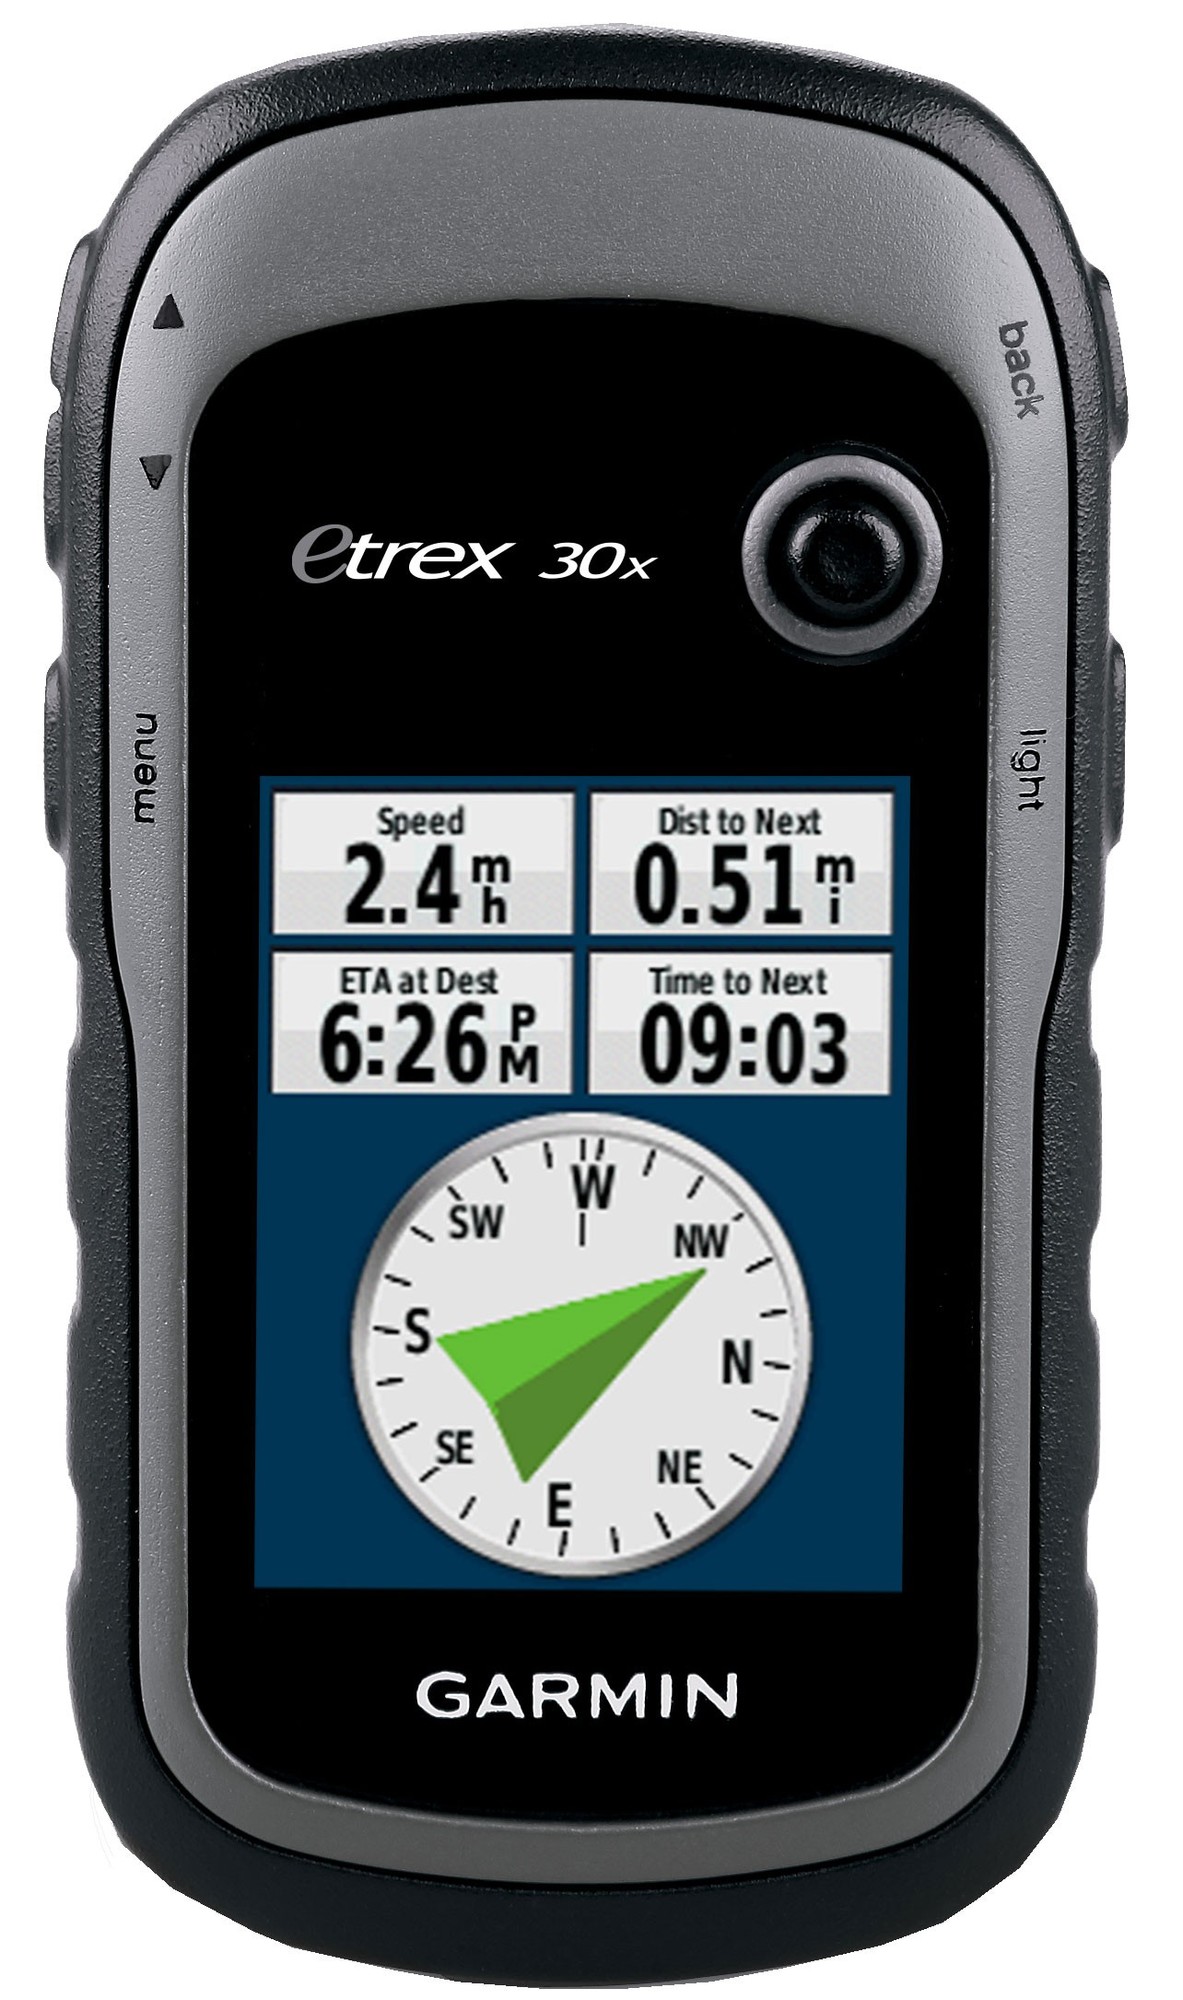 Garmin eTrex 30x GPS - Elkjøp